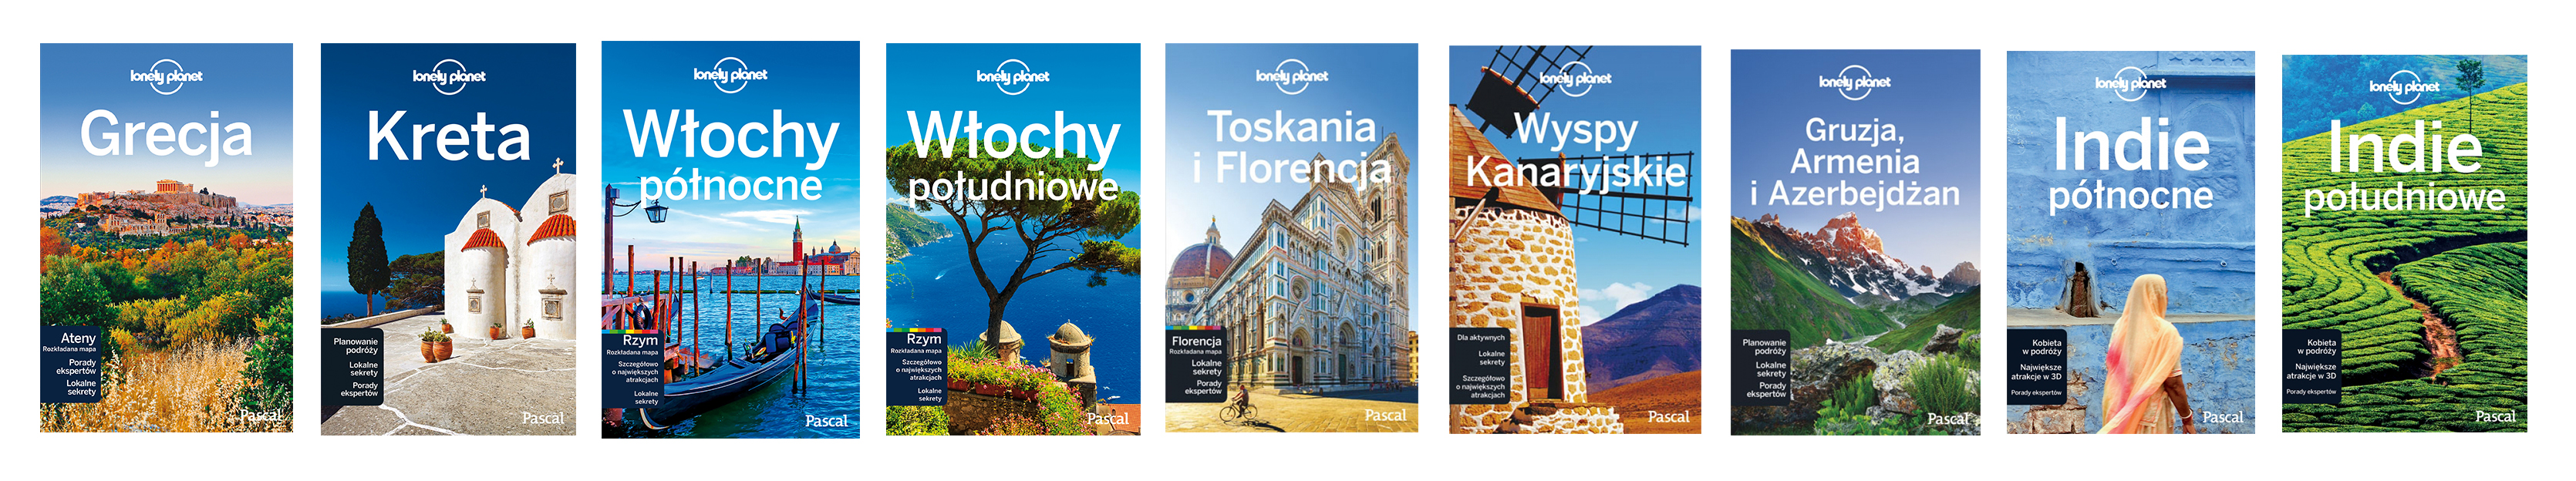 Przewodniki Lonely Planet w polskiej wersji językowej